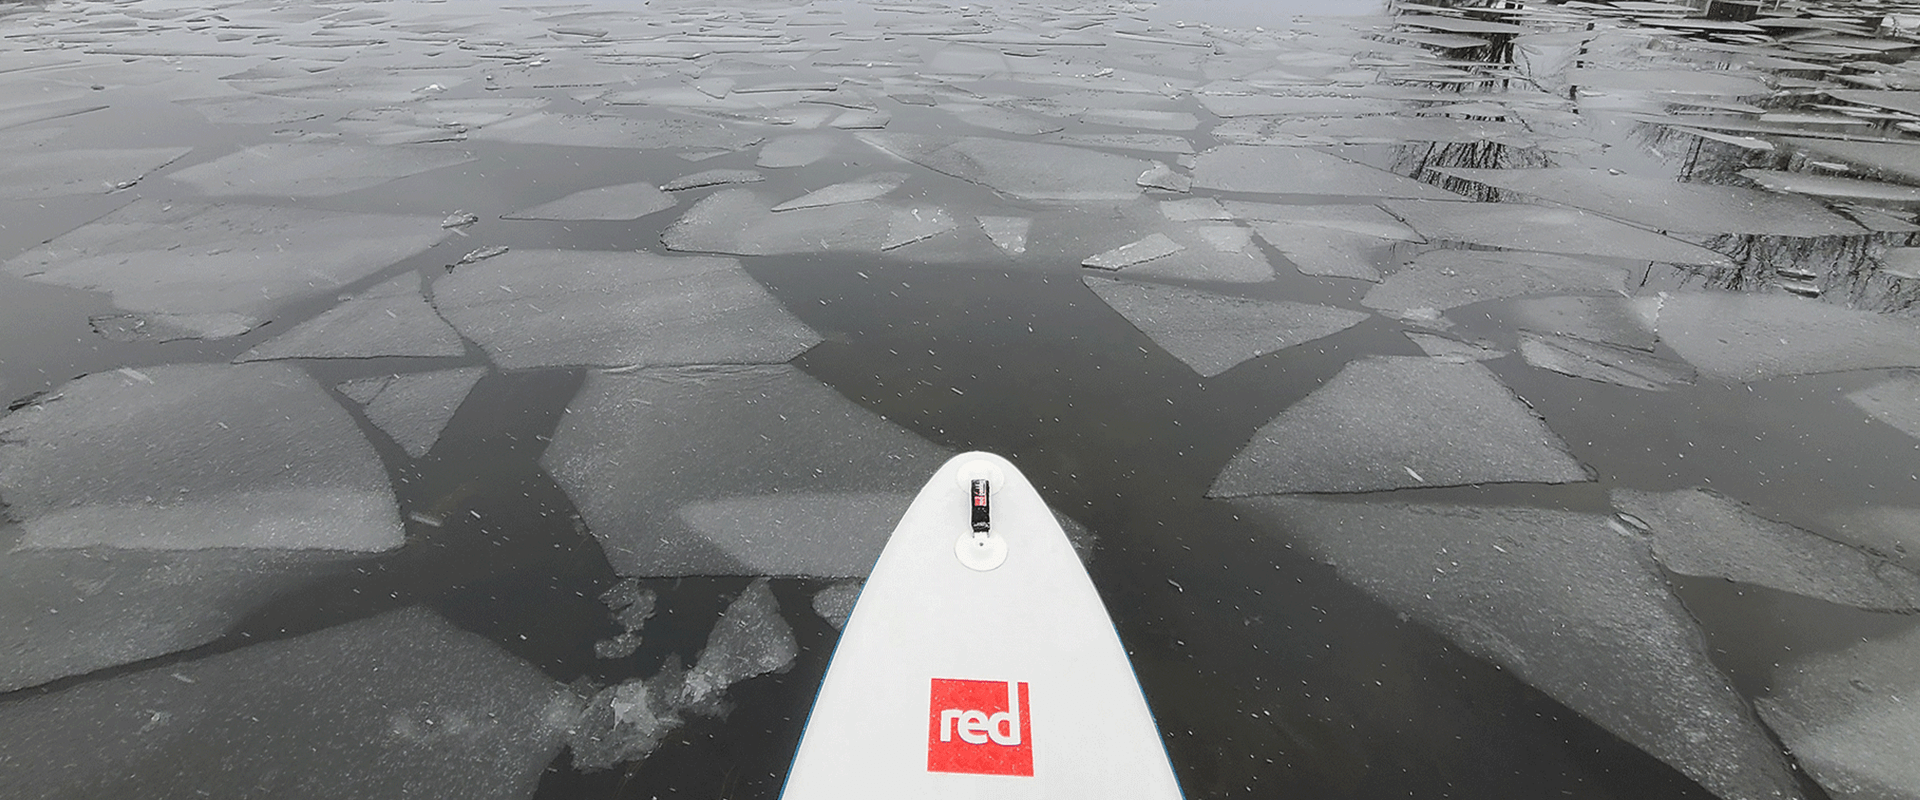 Spitze eines Red Paddleboards auf einem See mit Eisschollen